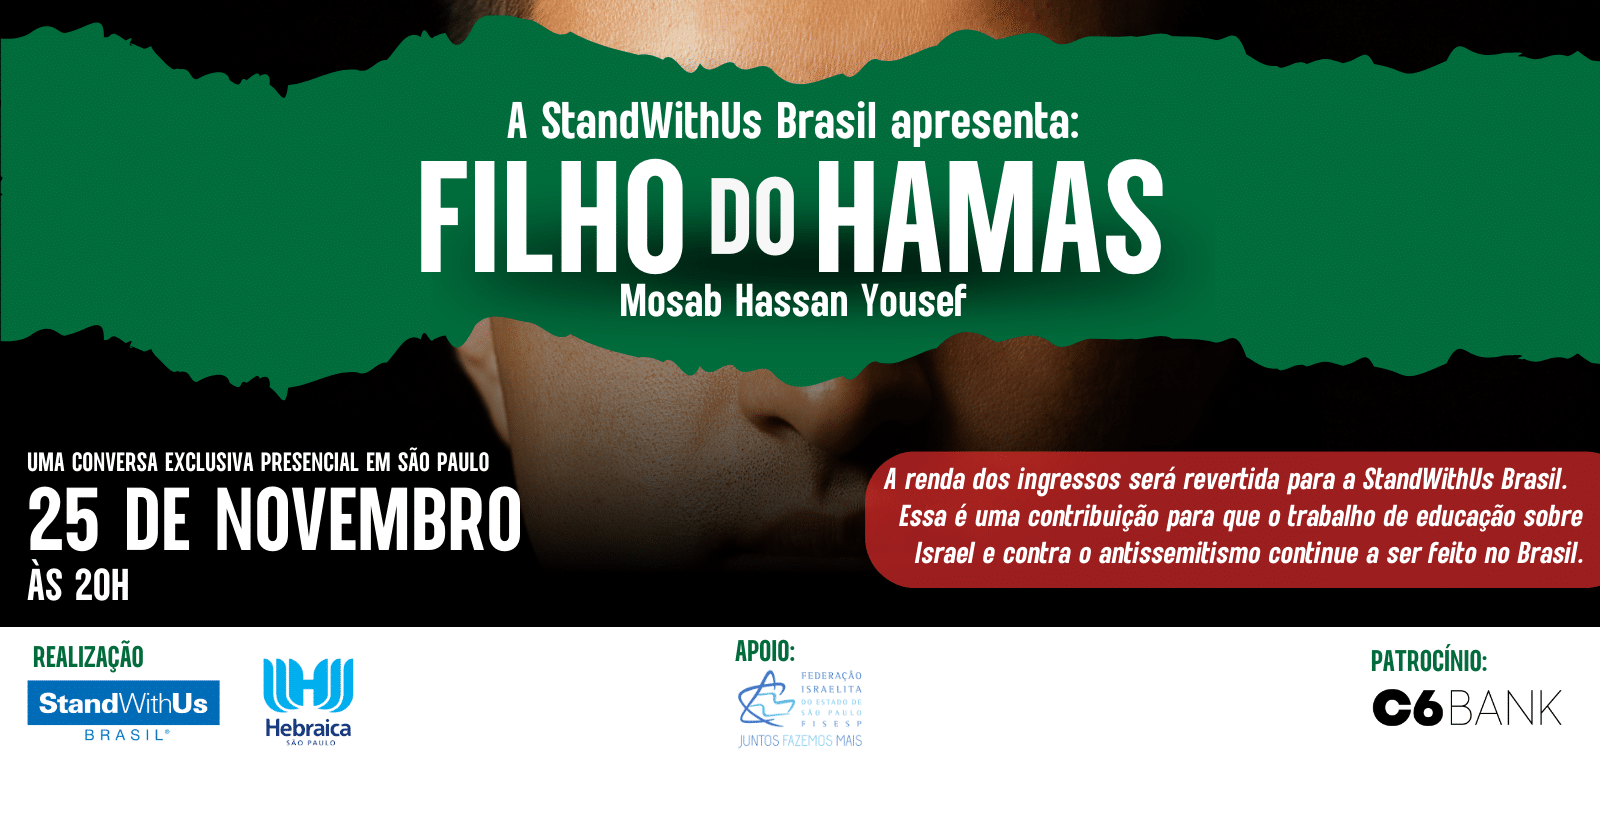 Filho do Hamas - Mosab Hassan Yousef em São Paulo - Sympla